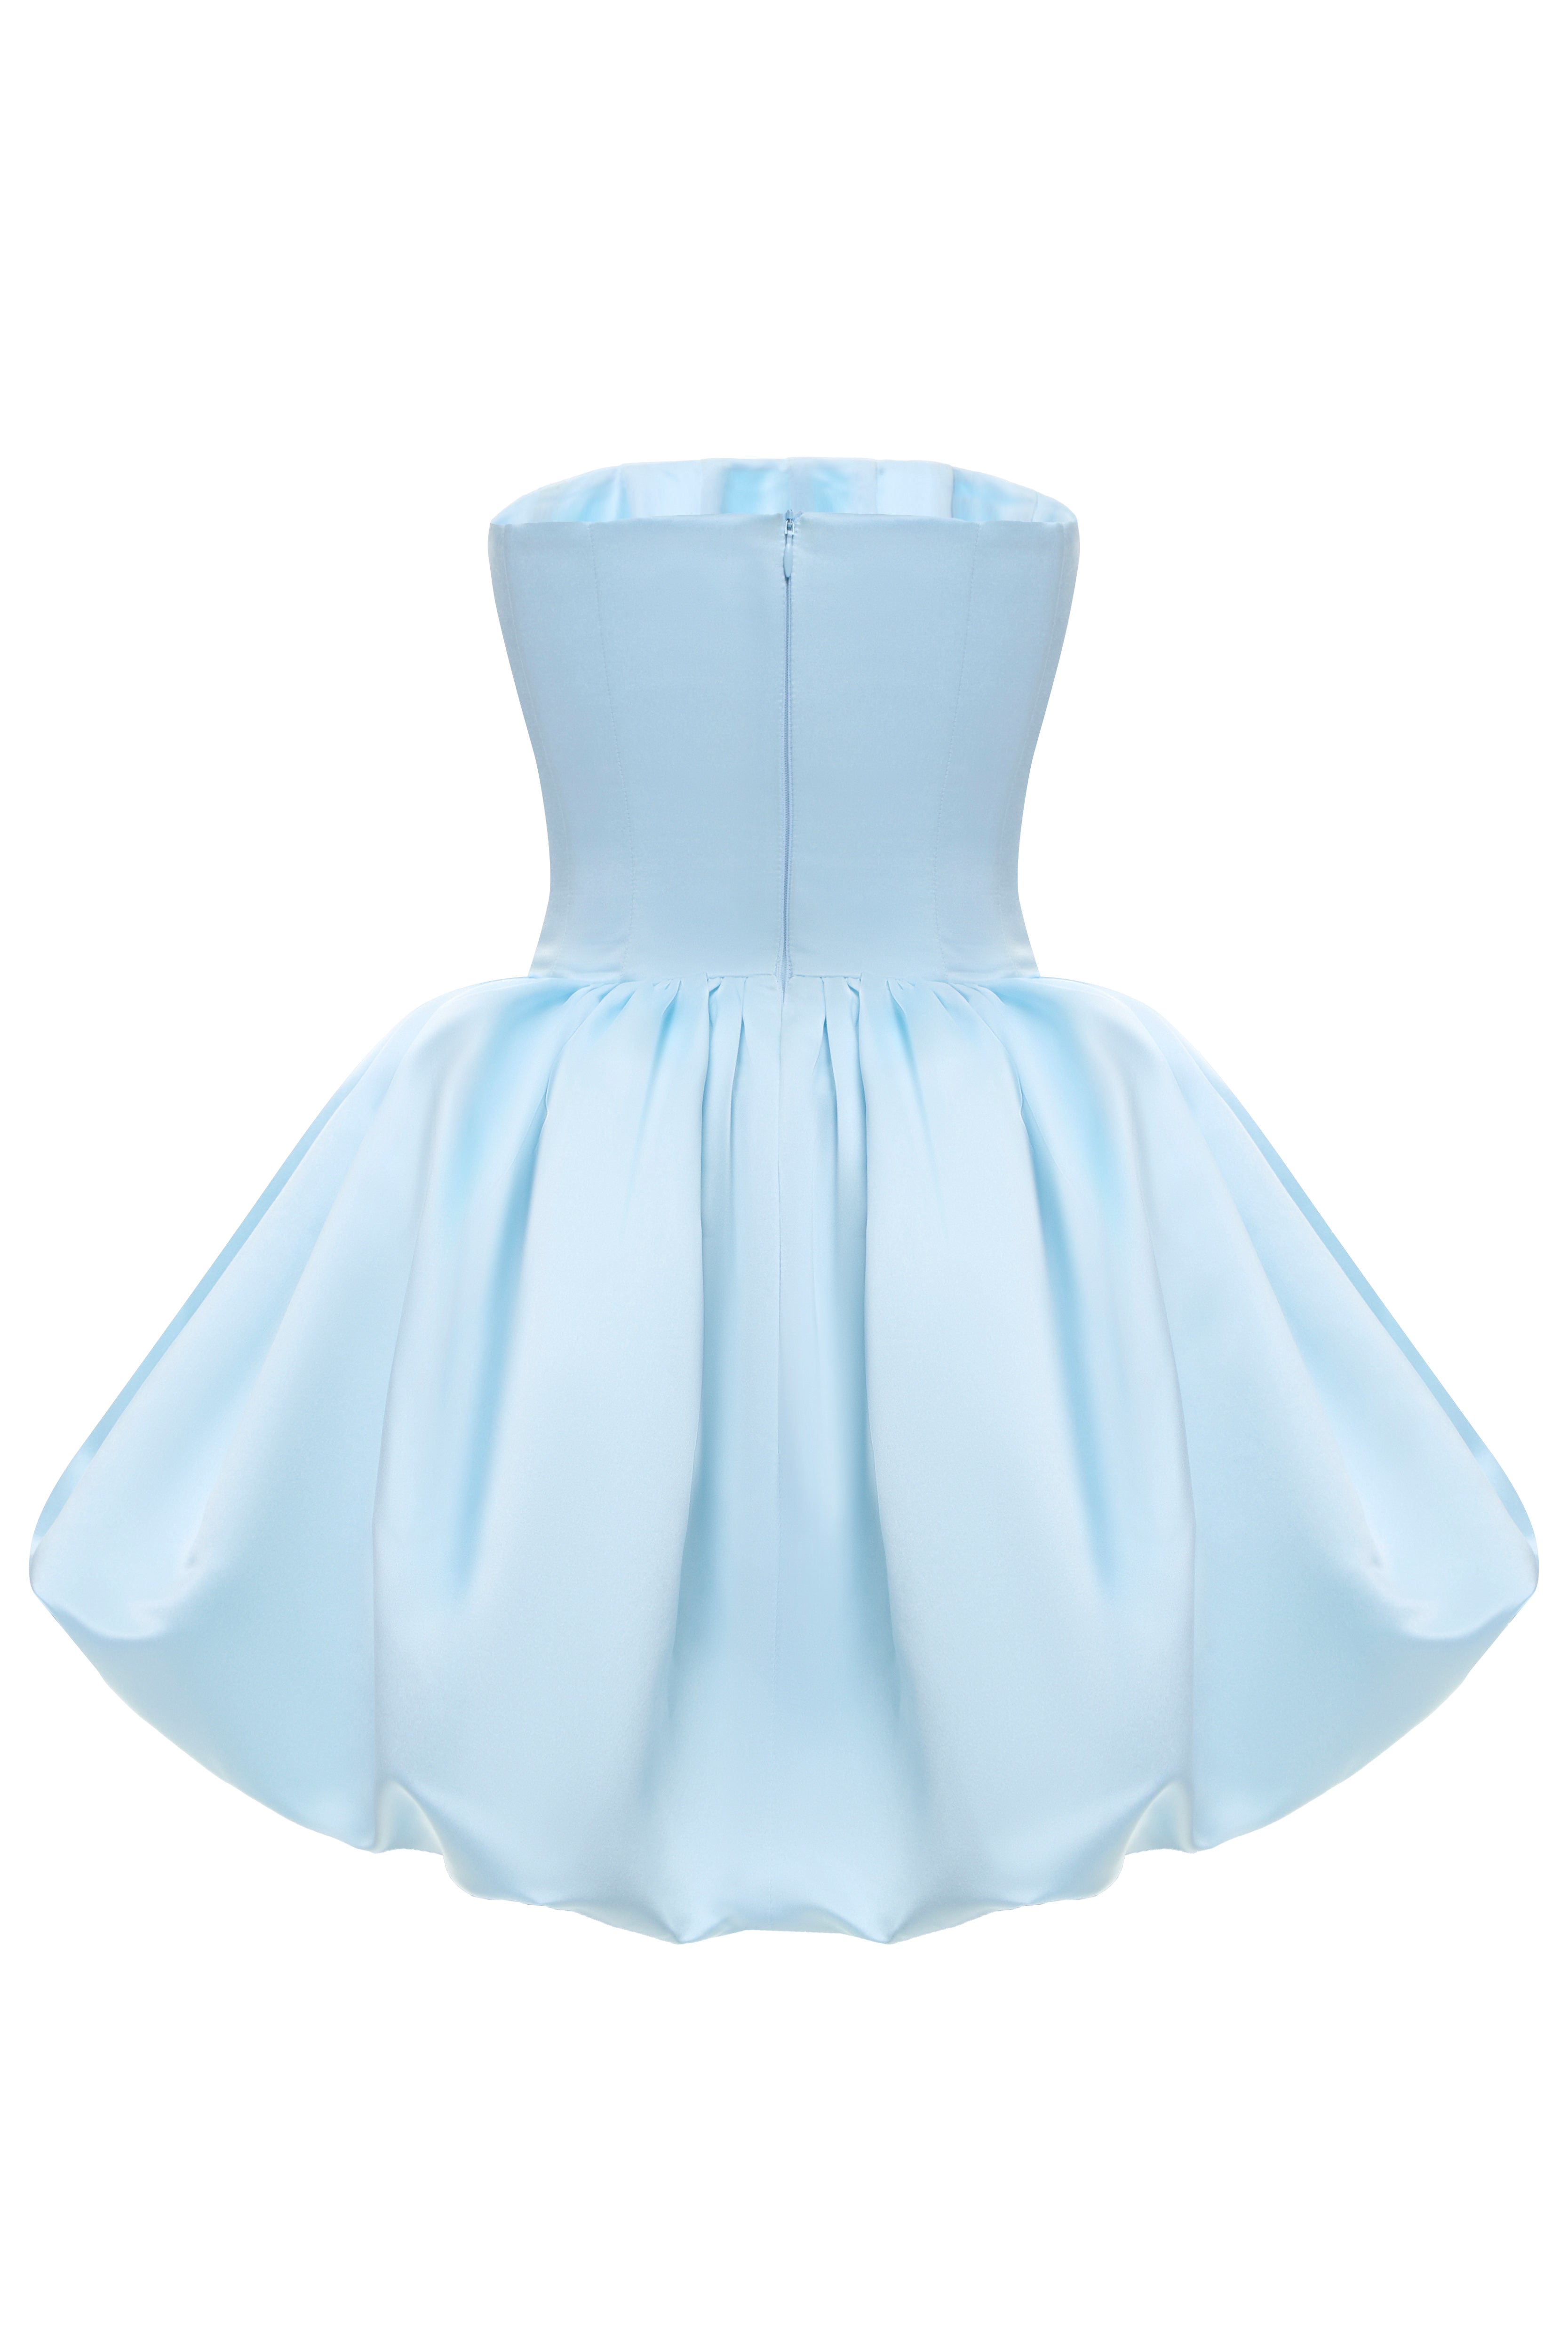 Shop Balykina Rosali Transformer Dress In Blue